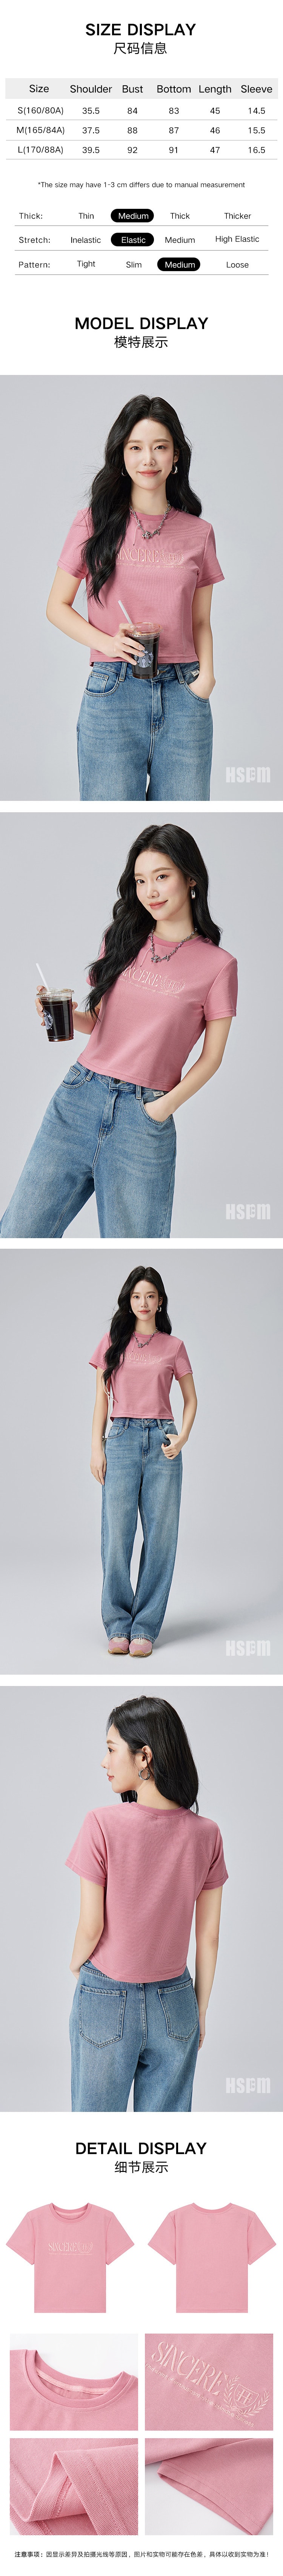 【中国直邮】HSPM 新款字母刺绣圆领短款短袖T恤 粉色 S